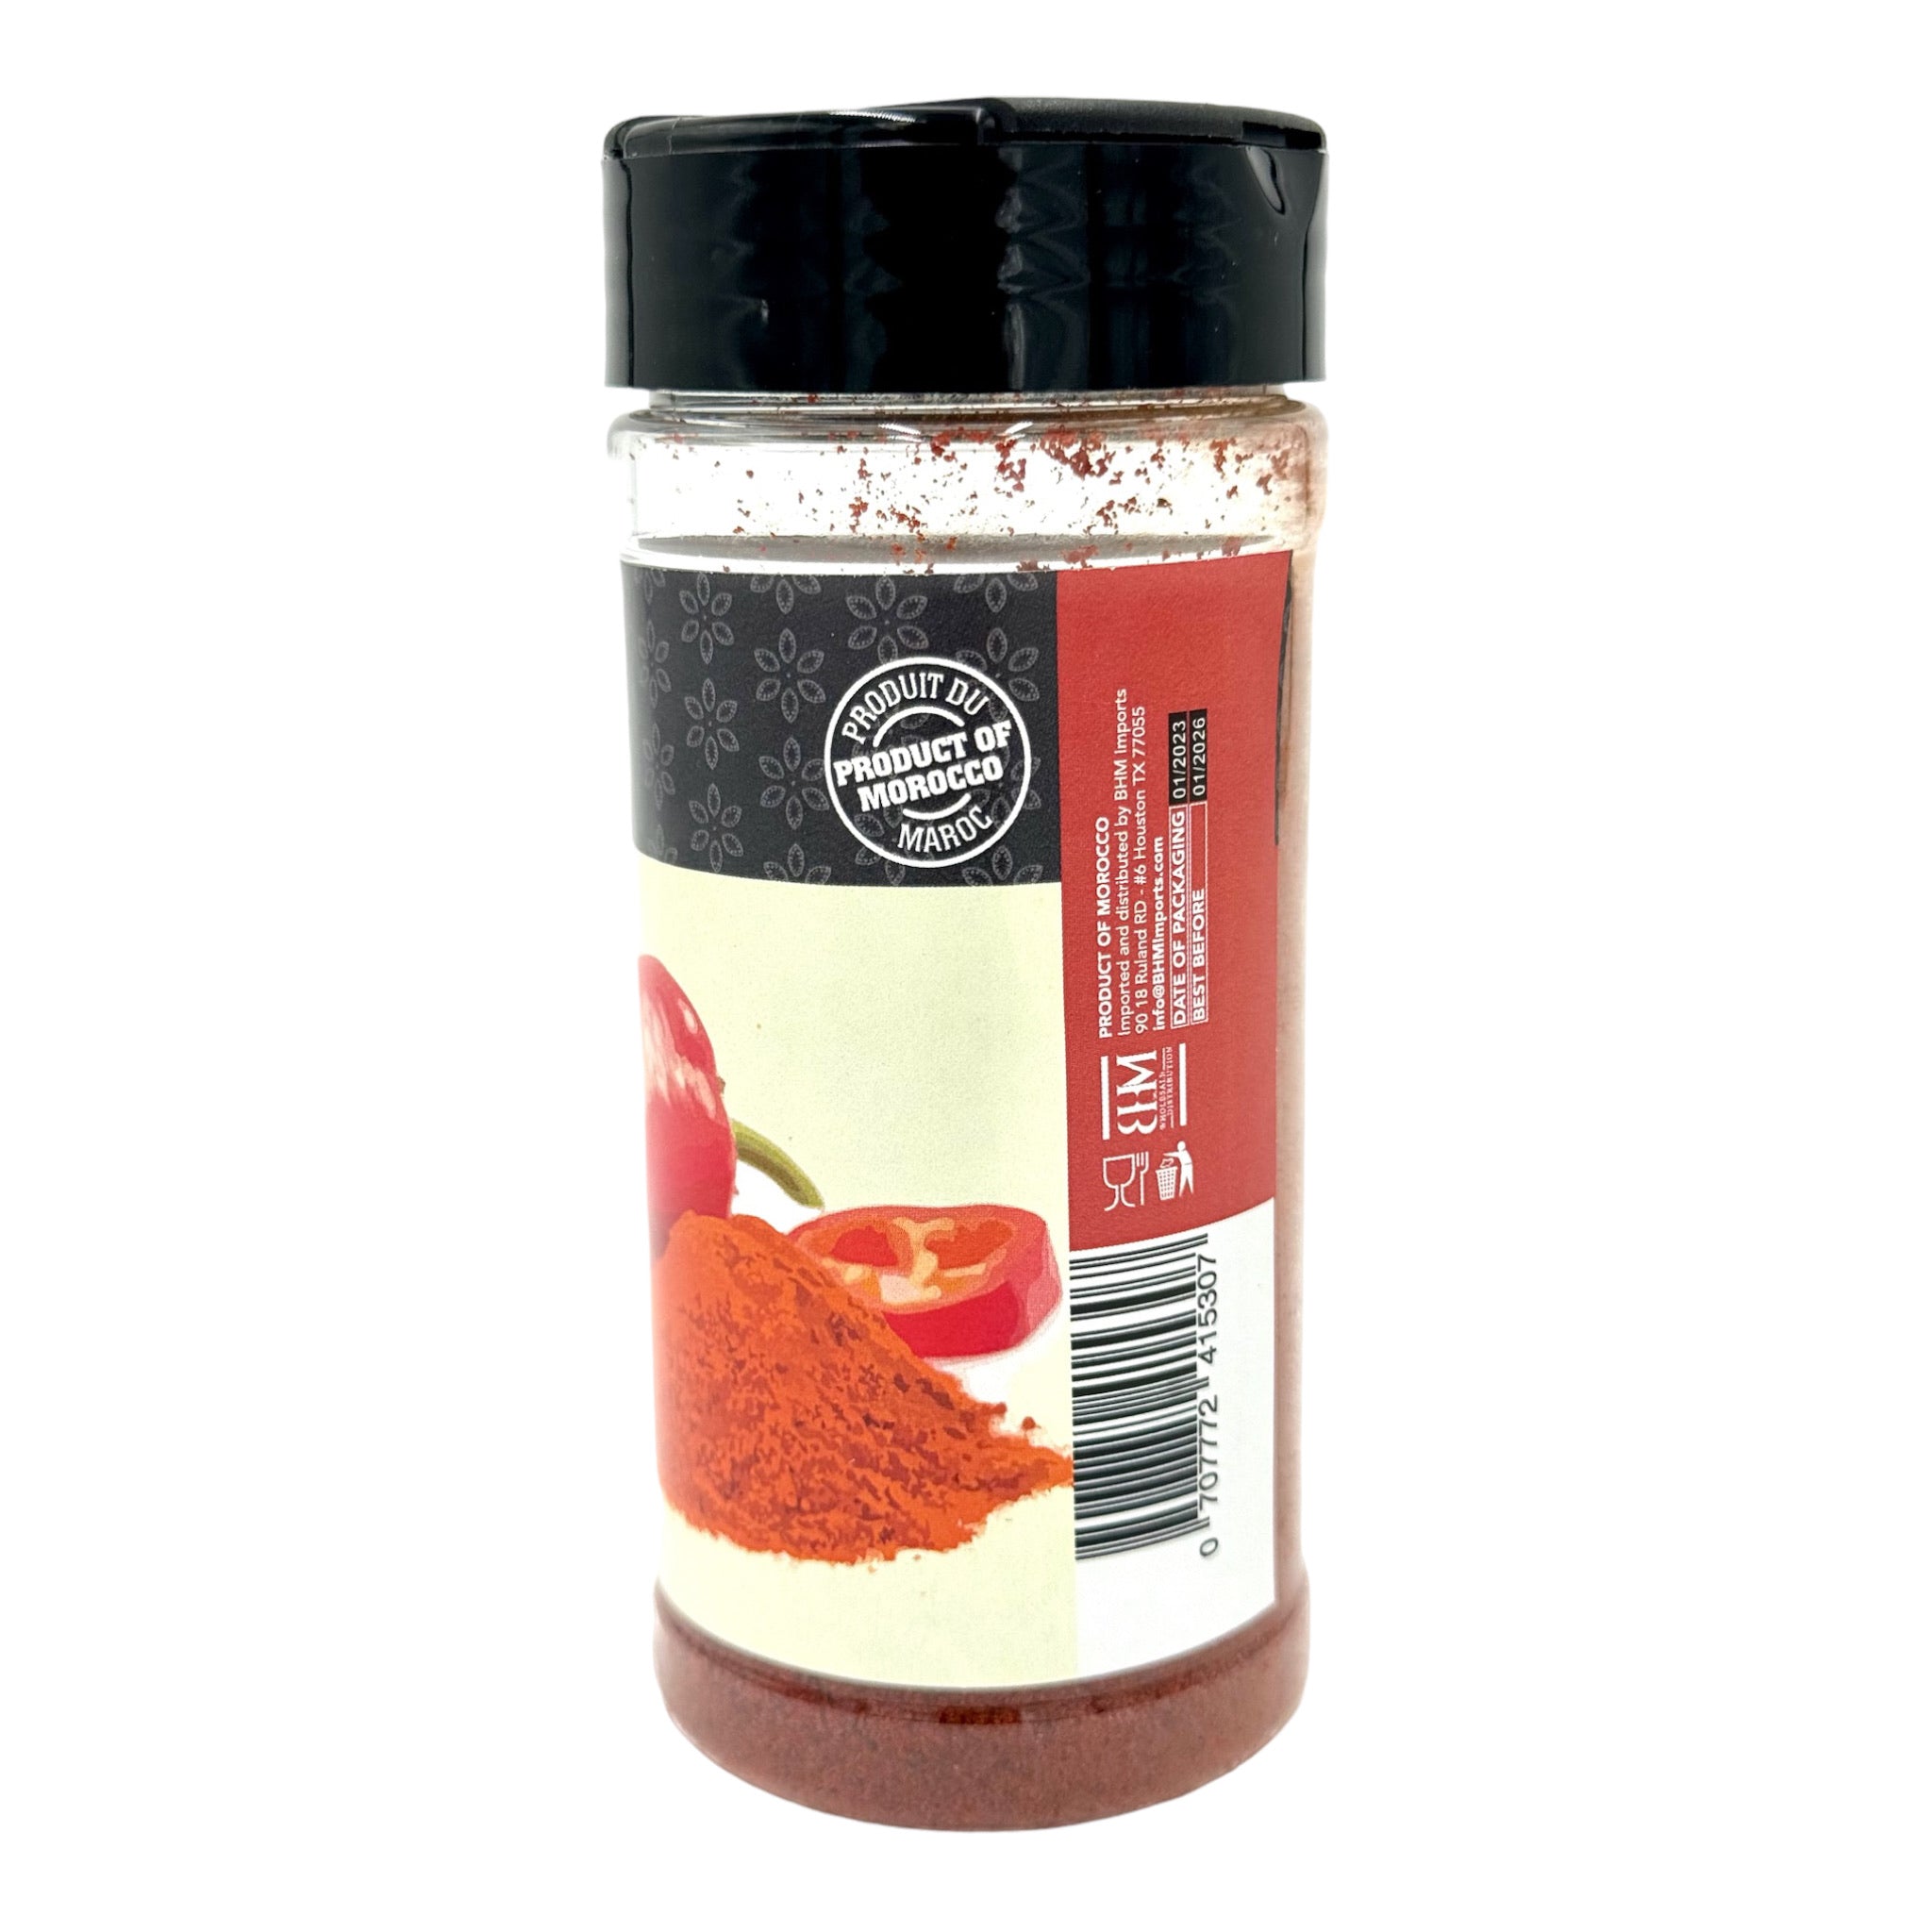 moroccan paprika powder by Mazyana brand